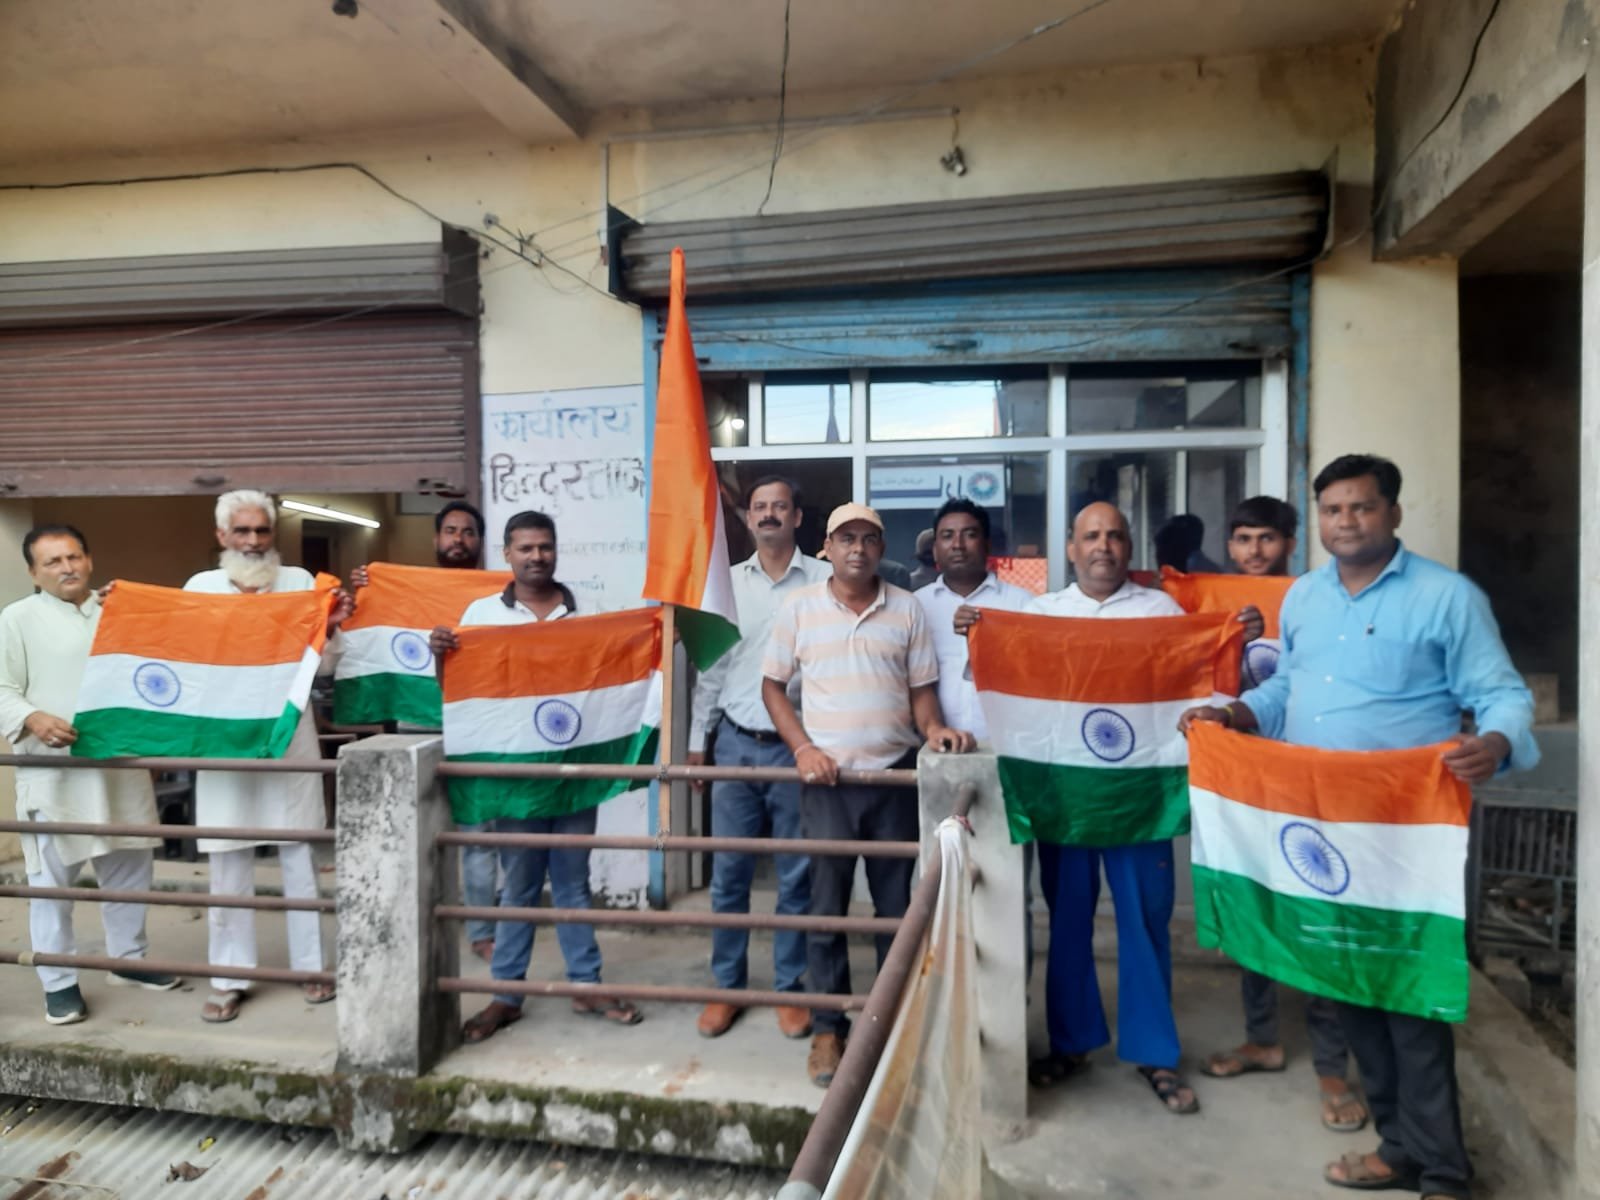 इंडियन जर्नलिस्ट एसोसिएशन ने डुमरियागंज में किया झंडा वितरण, अपने घर और प्रतिष्ठान पर तिरंगा लहराने की लोगों से अपील की